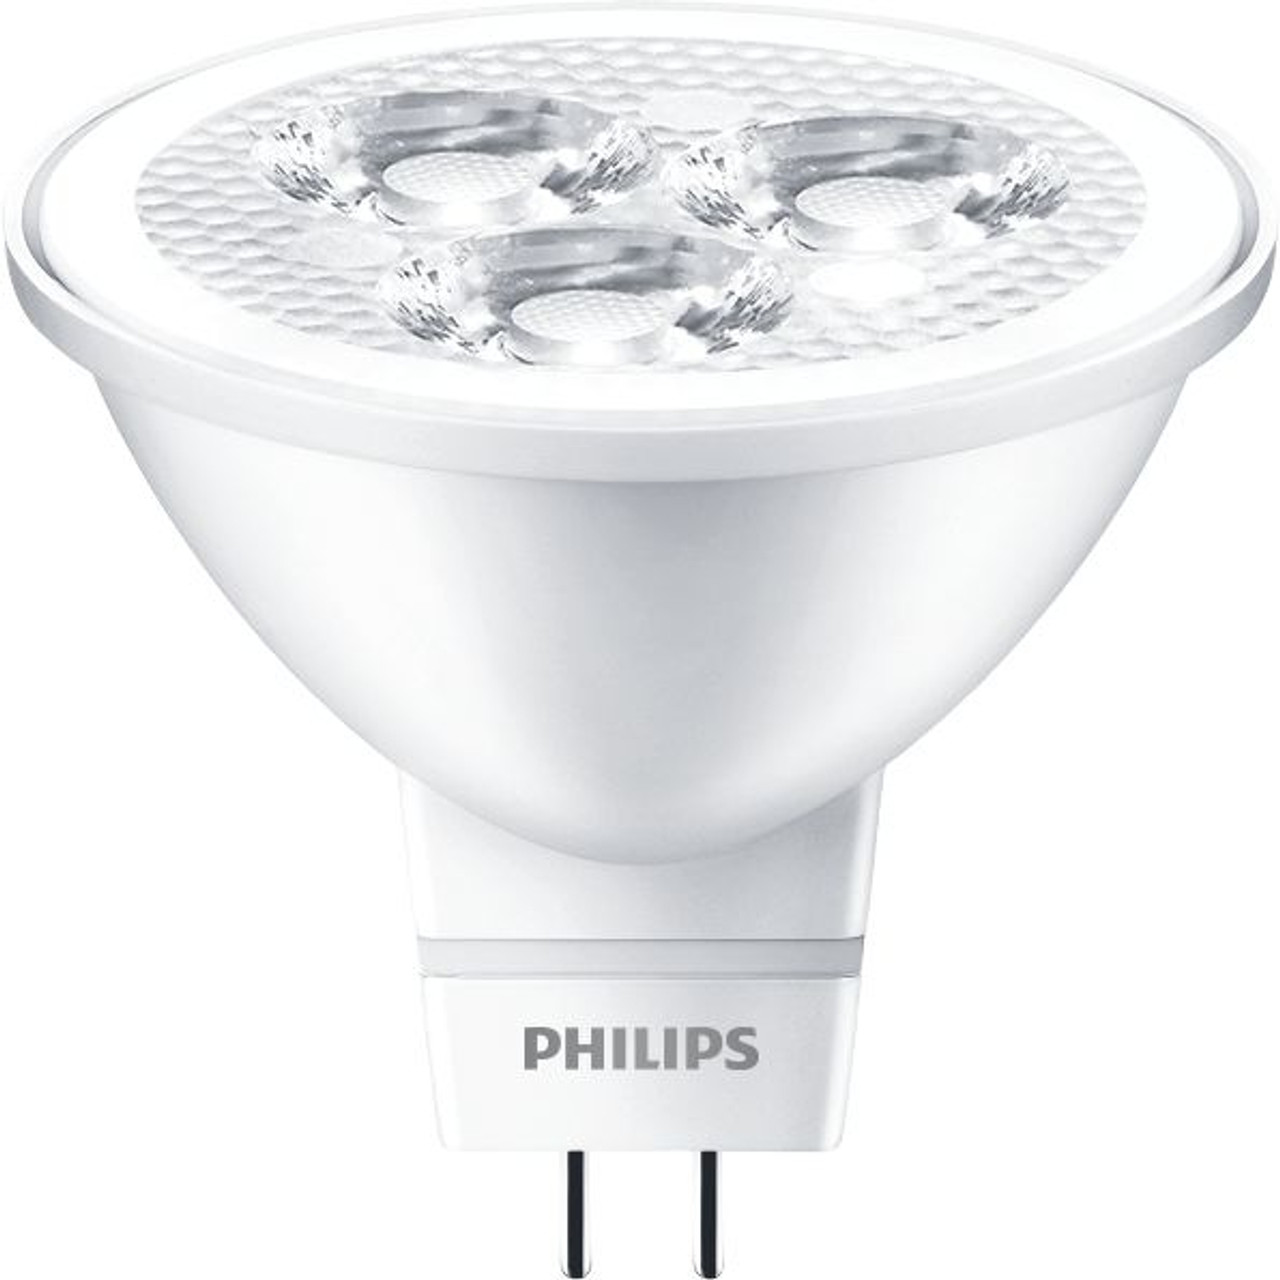 Verschrikkelijk heks Zeug Philips Lighting CorePro LED 3-35W 2700K MR16 24D CN LED Spots